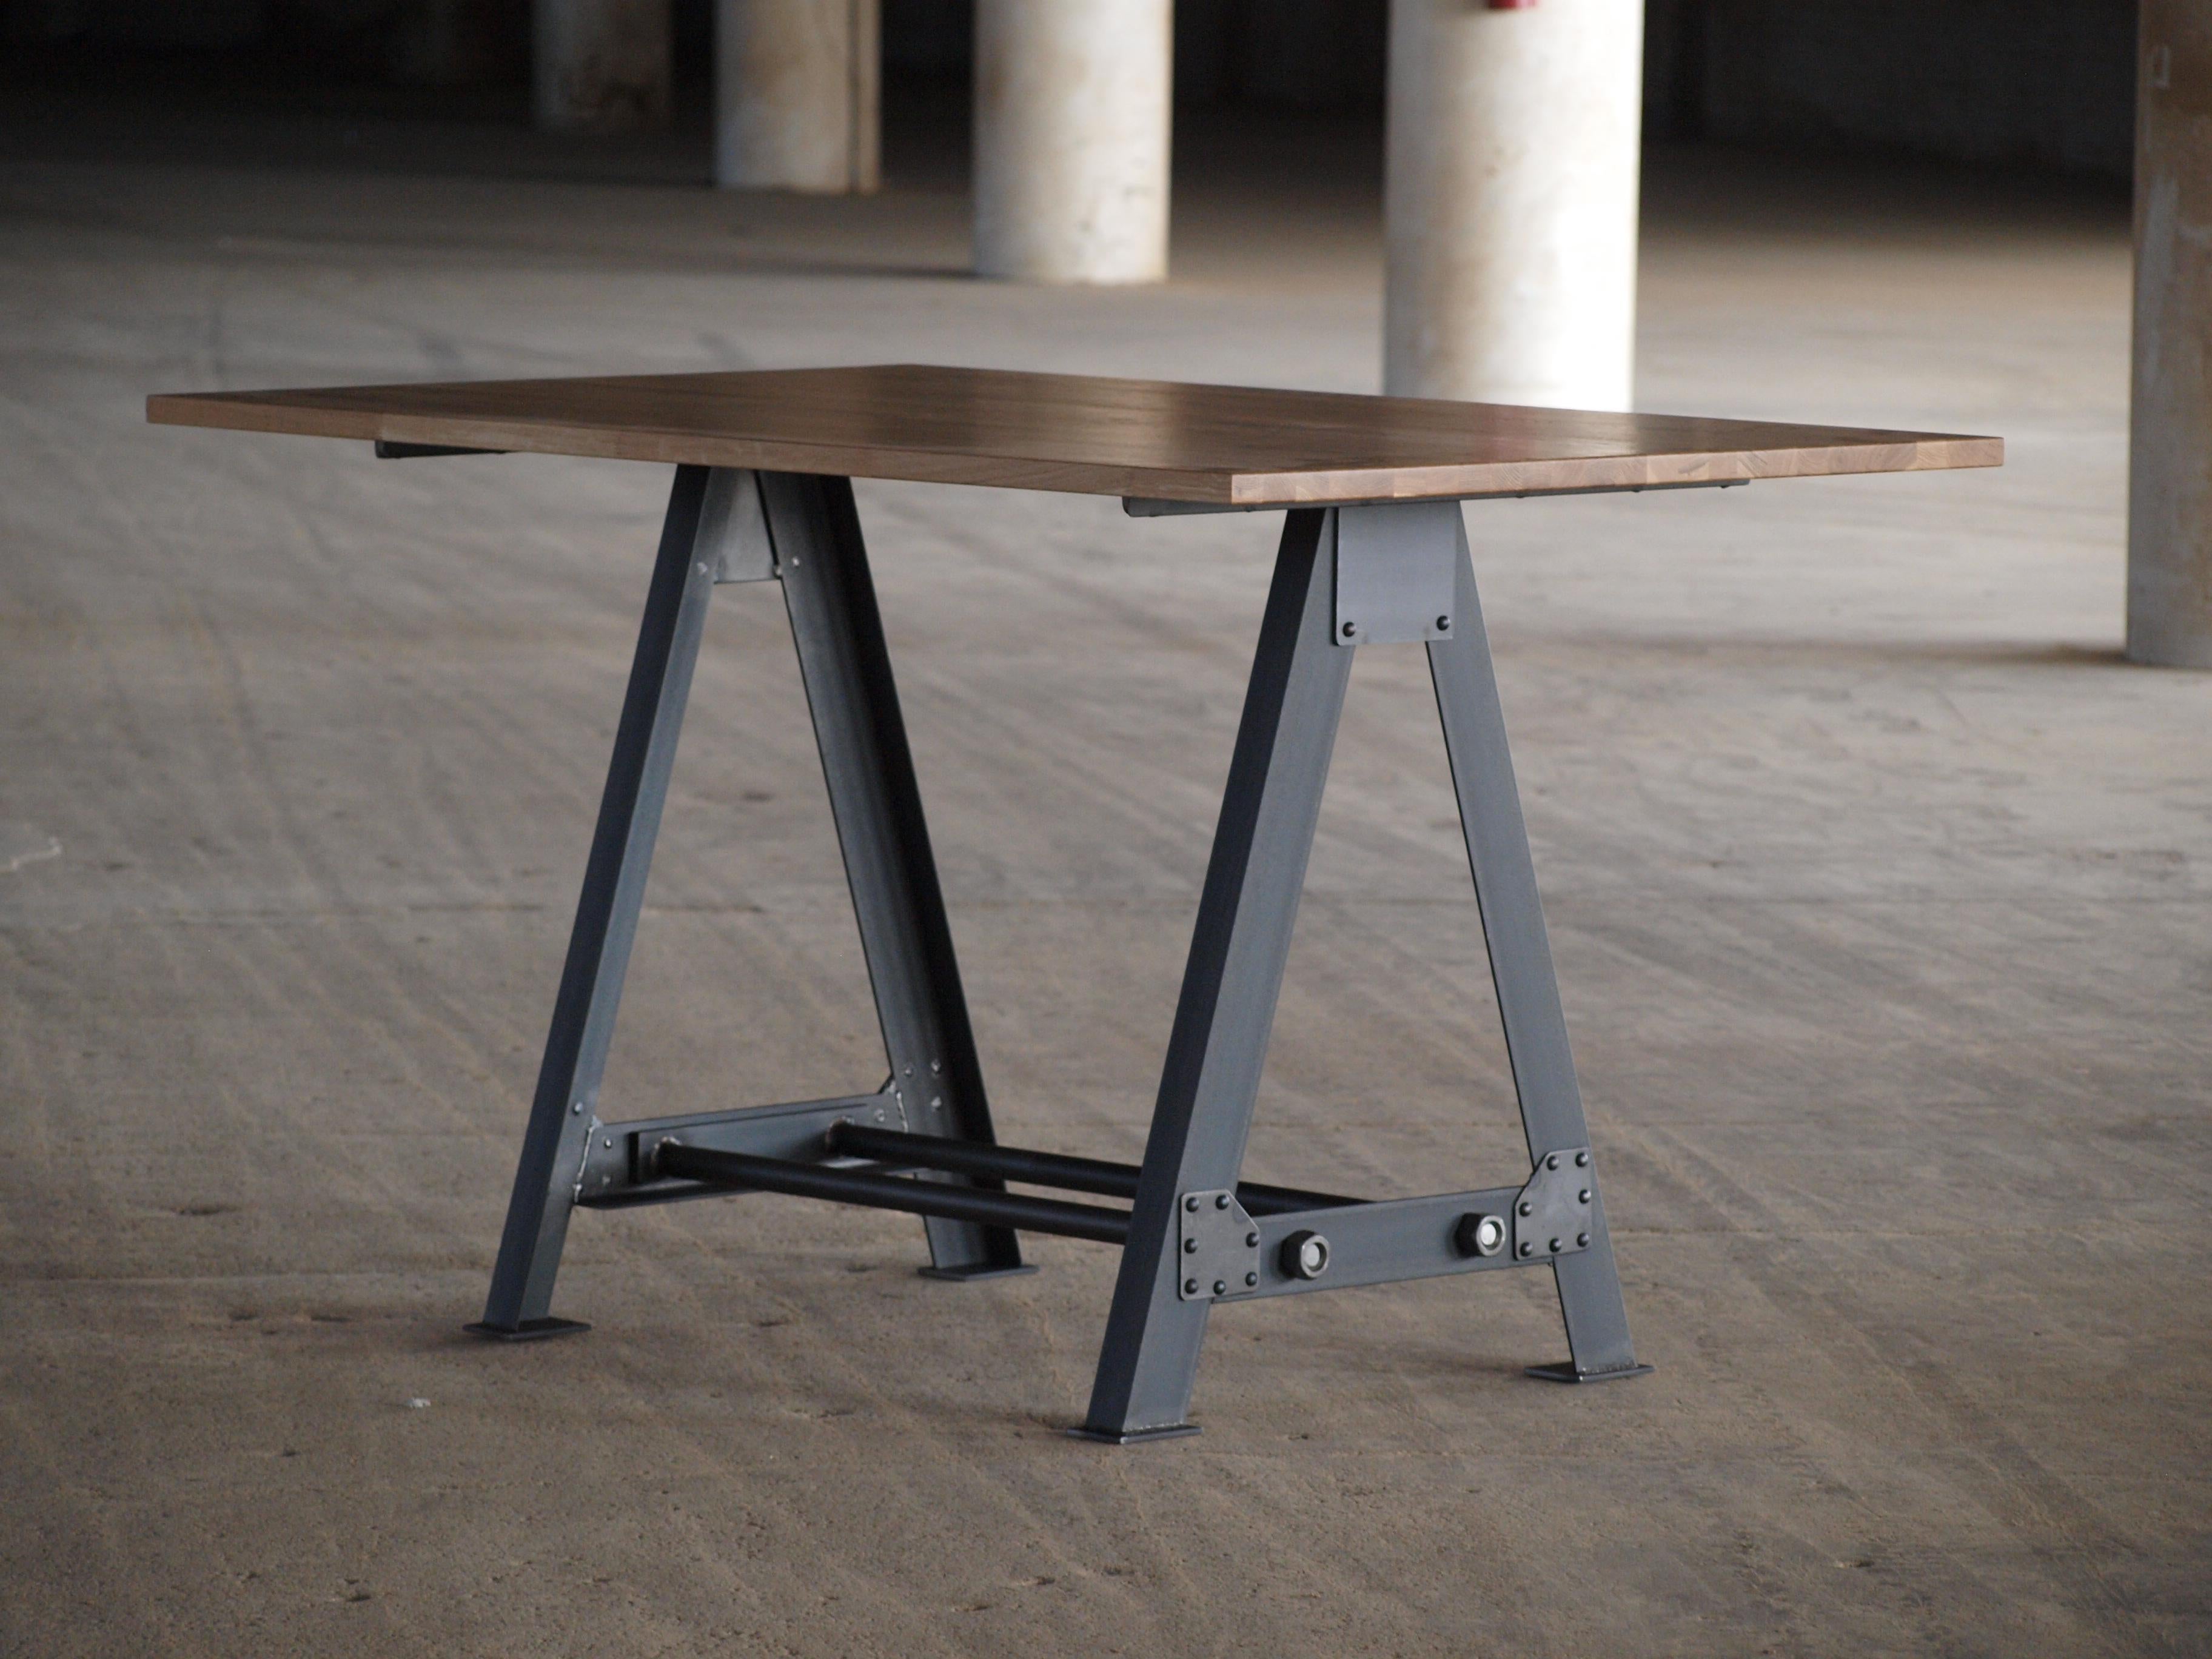 Wir stellen unseren Tisch aus massiver Weißeiche mit Stahlgestell vor - ein Beweis für amerikanische Handwerkskunst. Dieser in den USA aus einheimischen Materialien handgefertigte Tisch vereint mühelos Eleganz und Langlebigkeit und wurde so